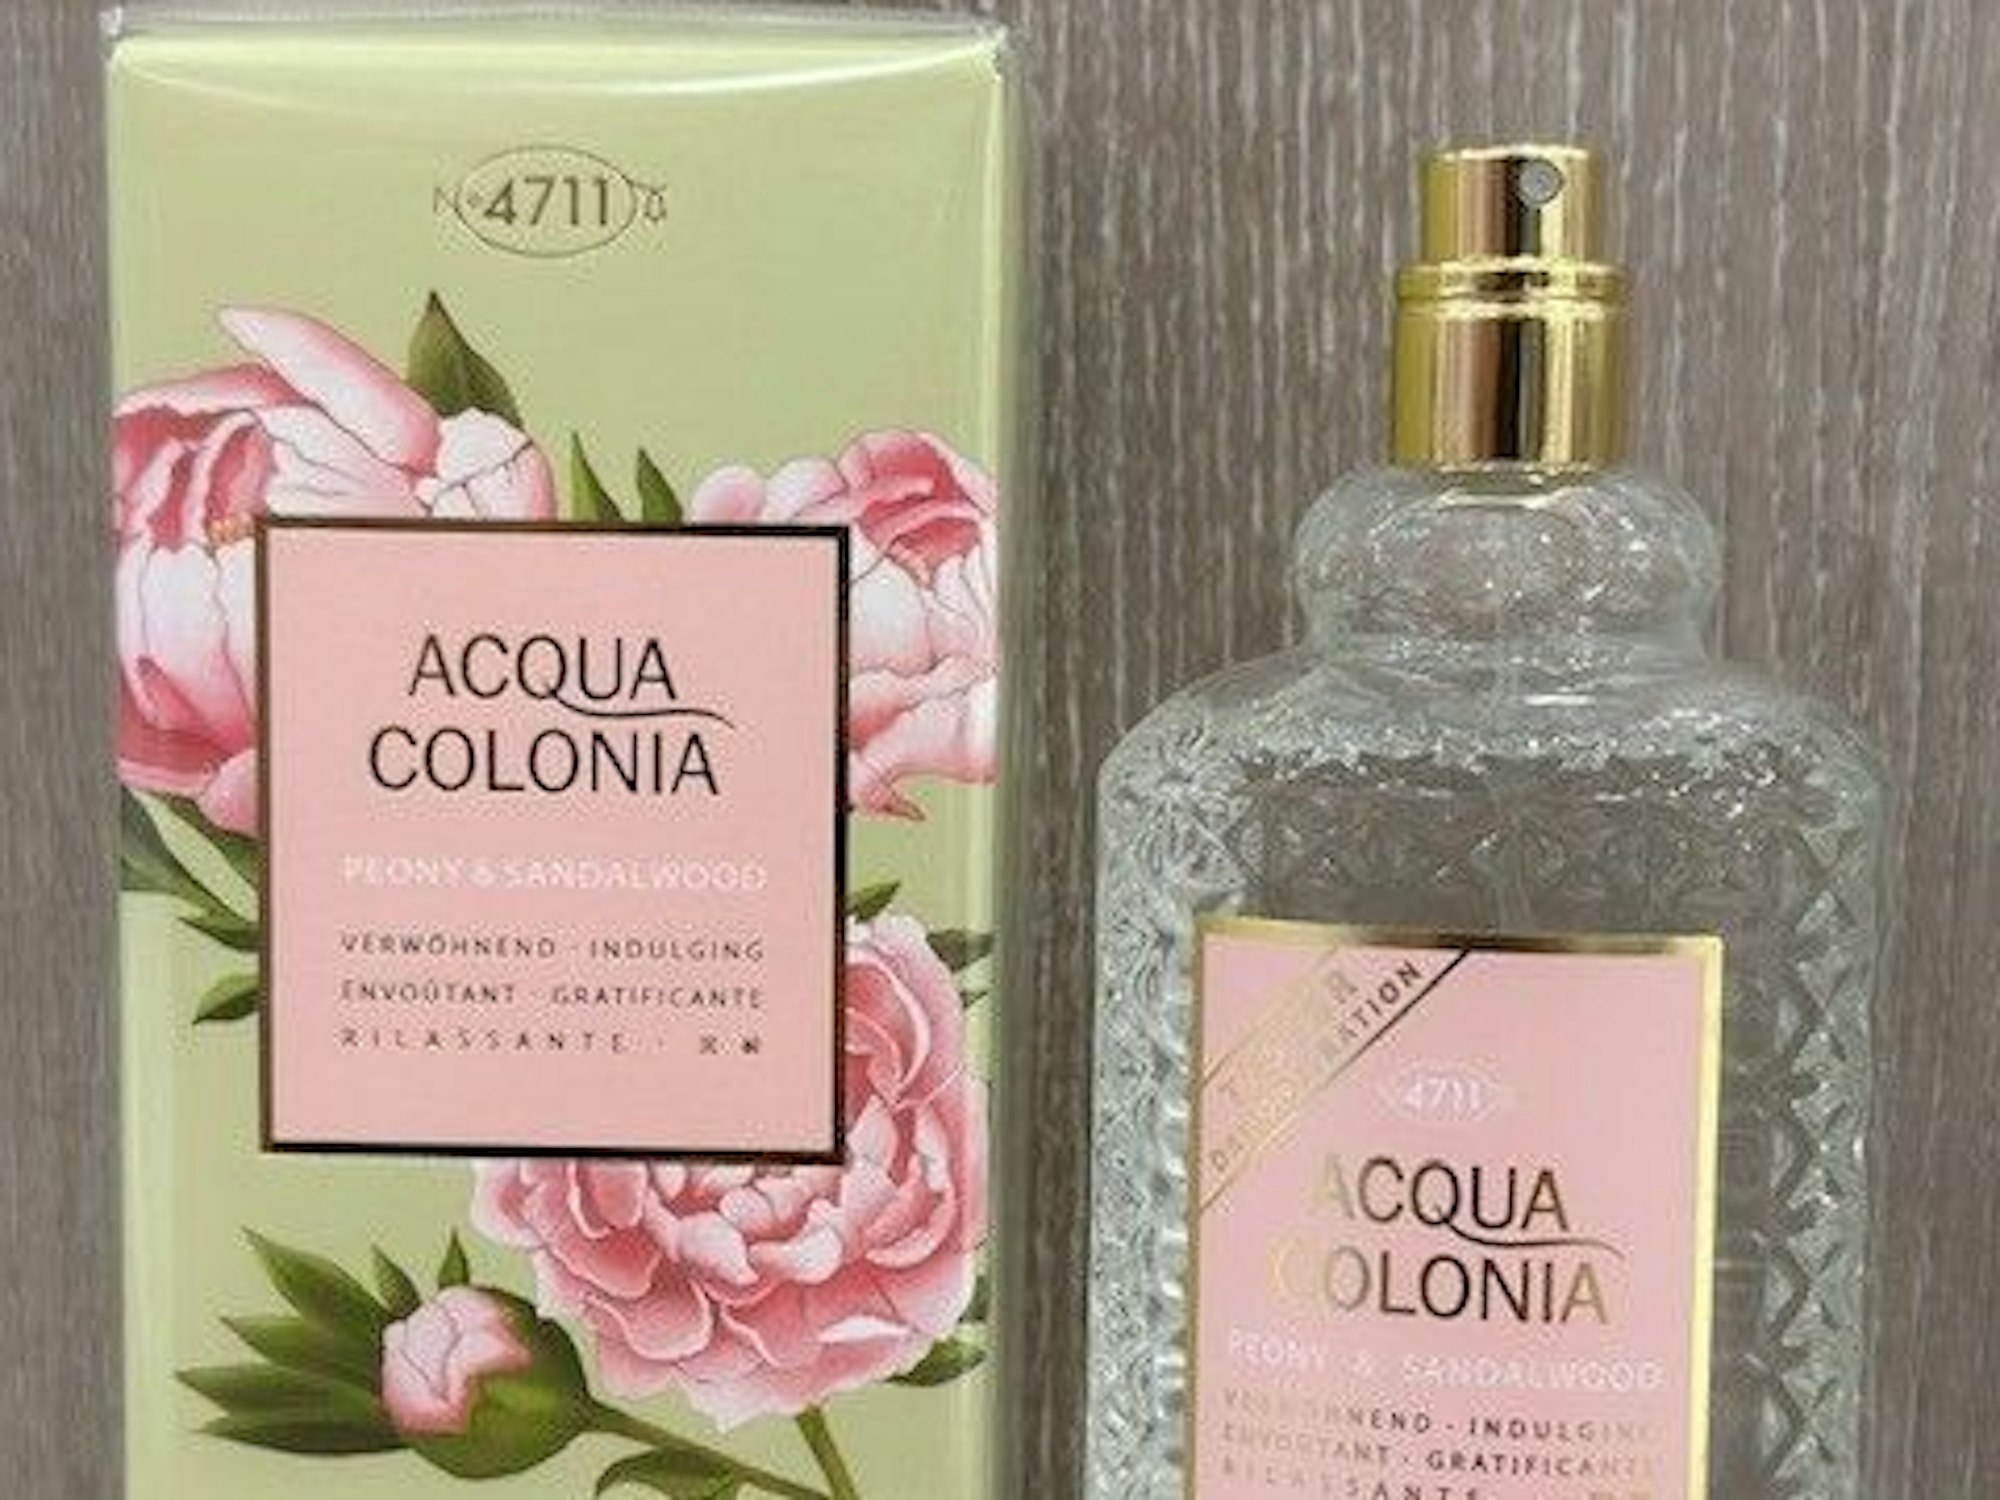 Parfum 4711 Acqua Colonia in der neuen Sorte Peony & Sandalwood